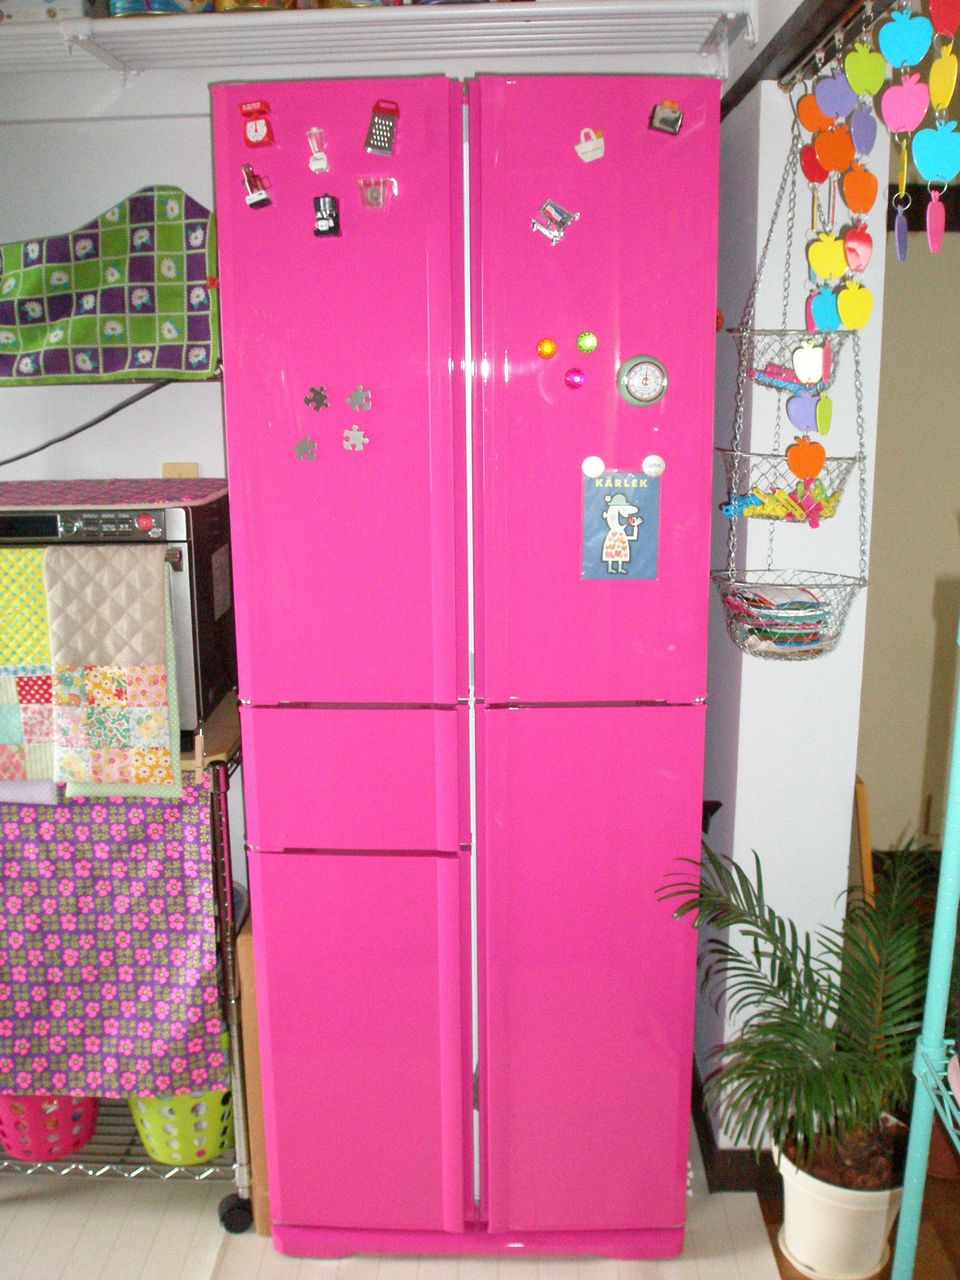 ピンク冷蔵庫 おしゃれ なカラー冷蔵庫 ラシックカラーズ